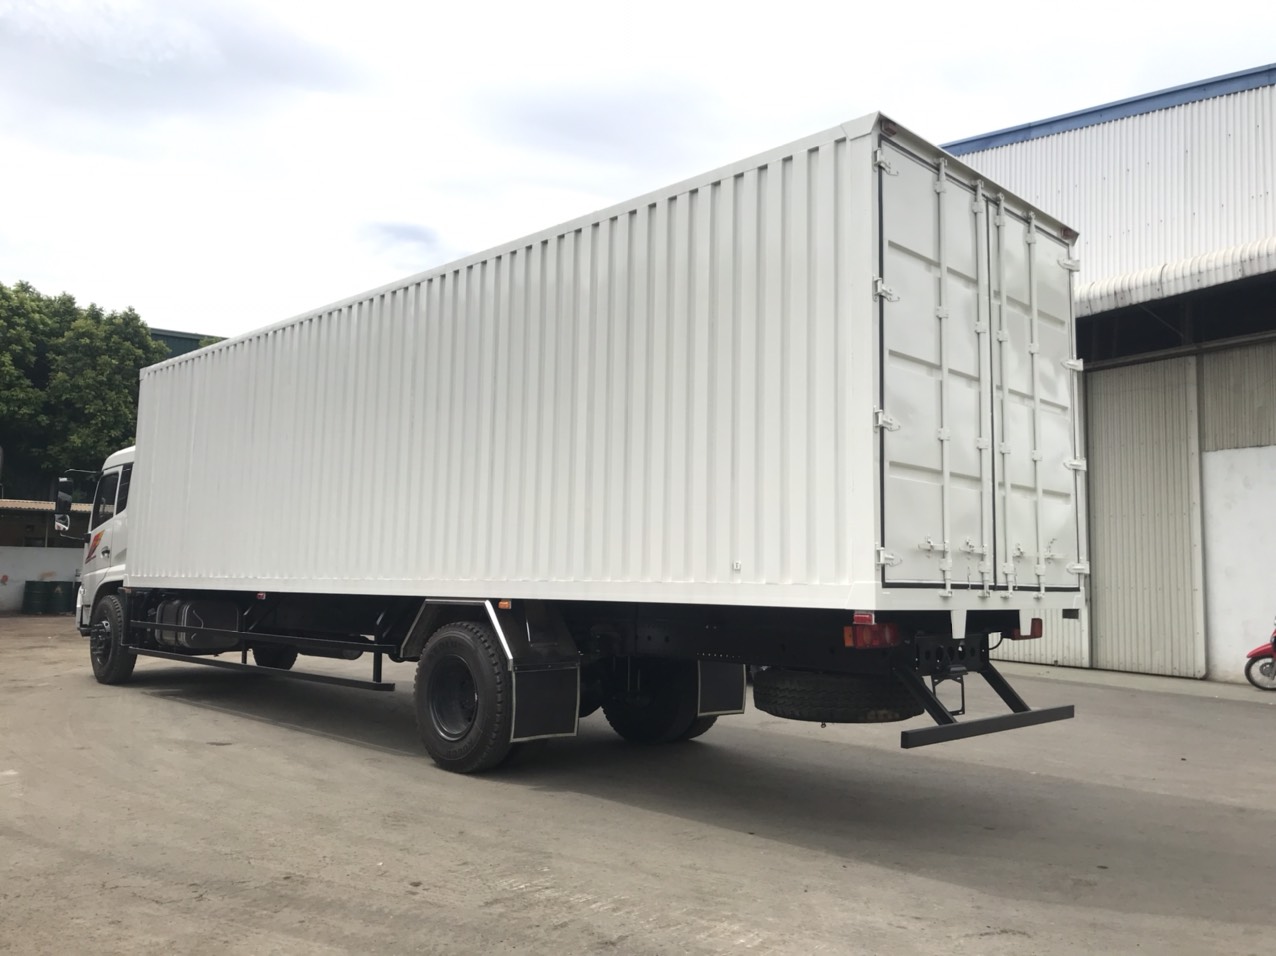 Xe tải thùng kín 9,7 mét Dongfeng Hoàng Huy mở 3 cửa